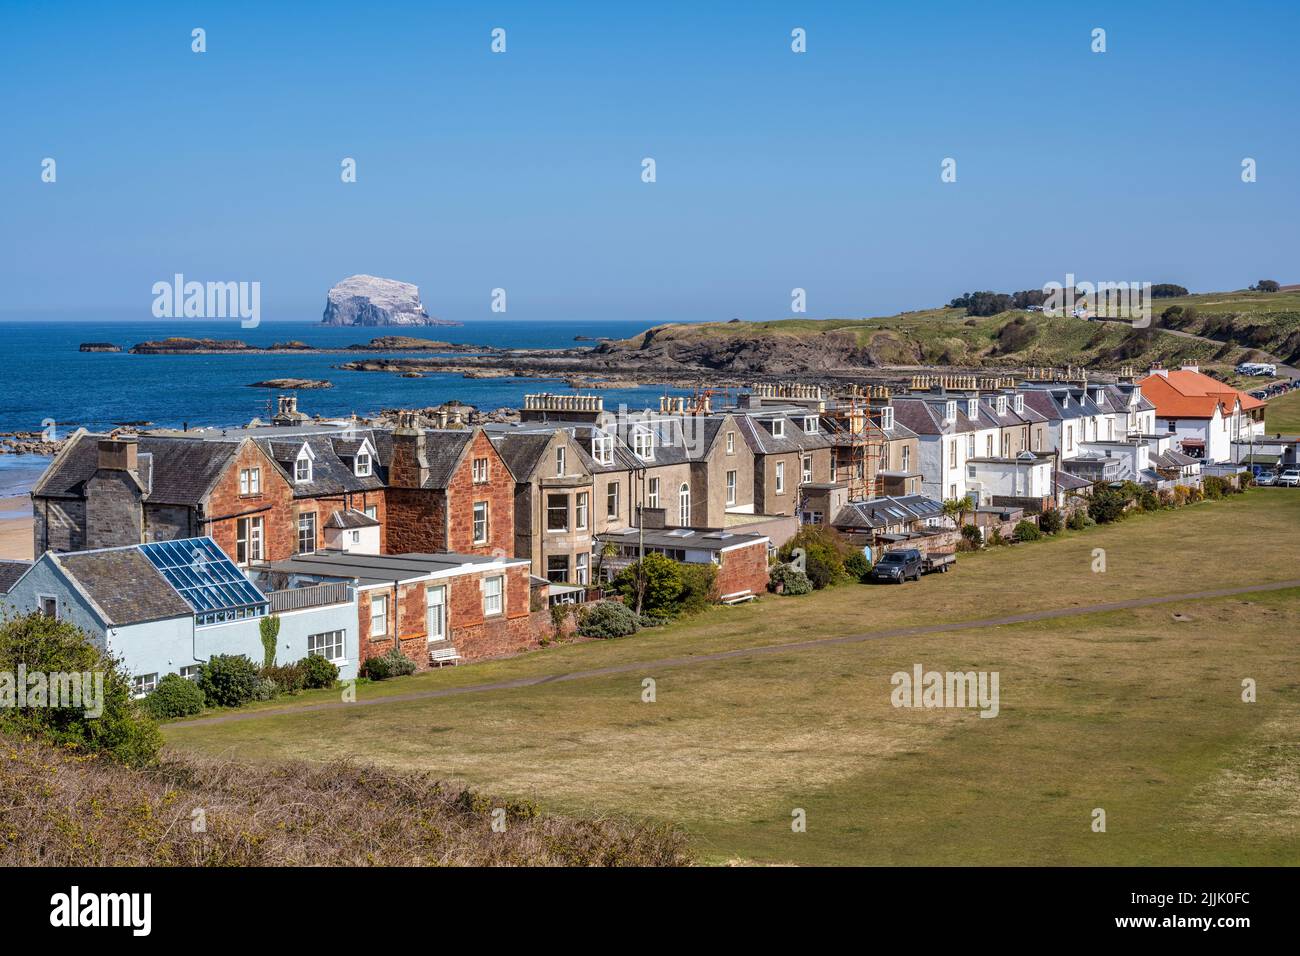 Maisons sur Marine Parade, avec la colonie d'oiseaux de mer de Bass Rock à distance, sur le front de mer de la ville côtière de North Berwick à East Lothian, Écosse, Royaume-Uni Banque D'Images